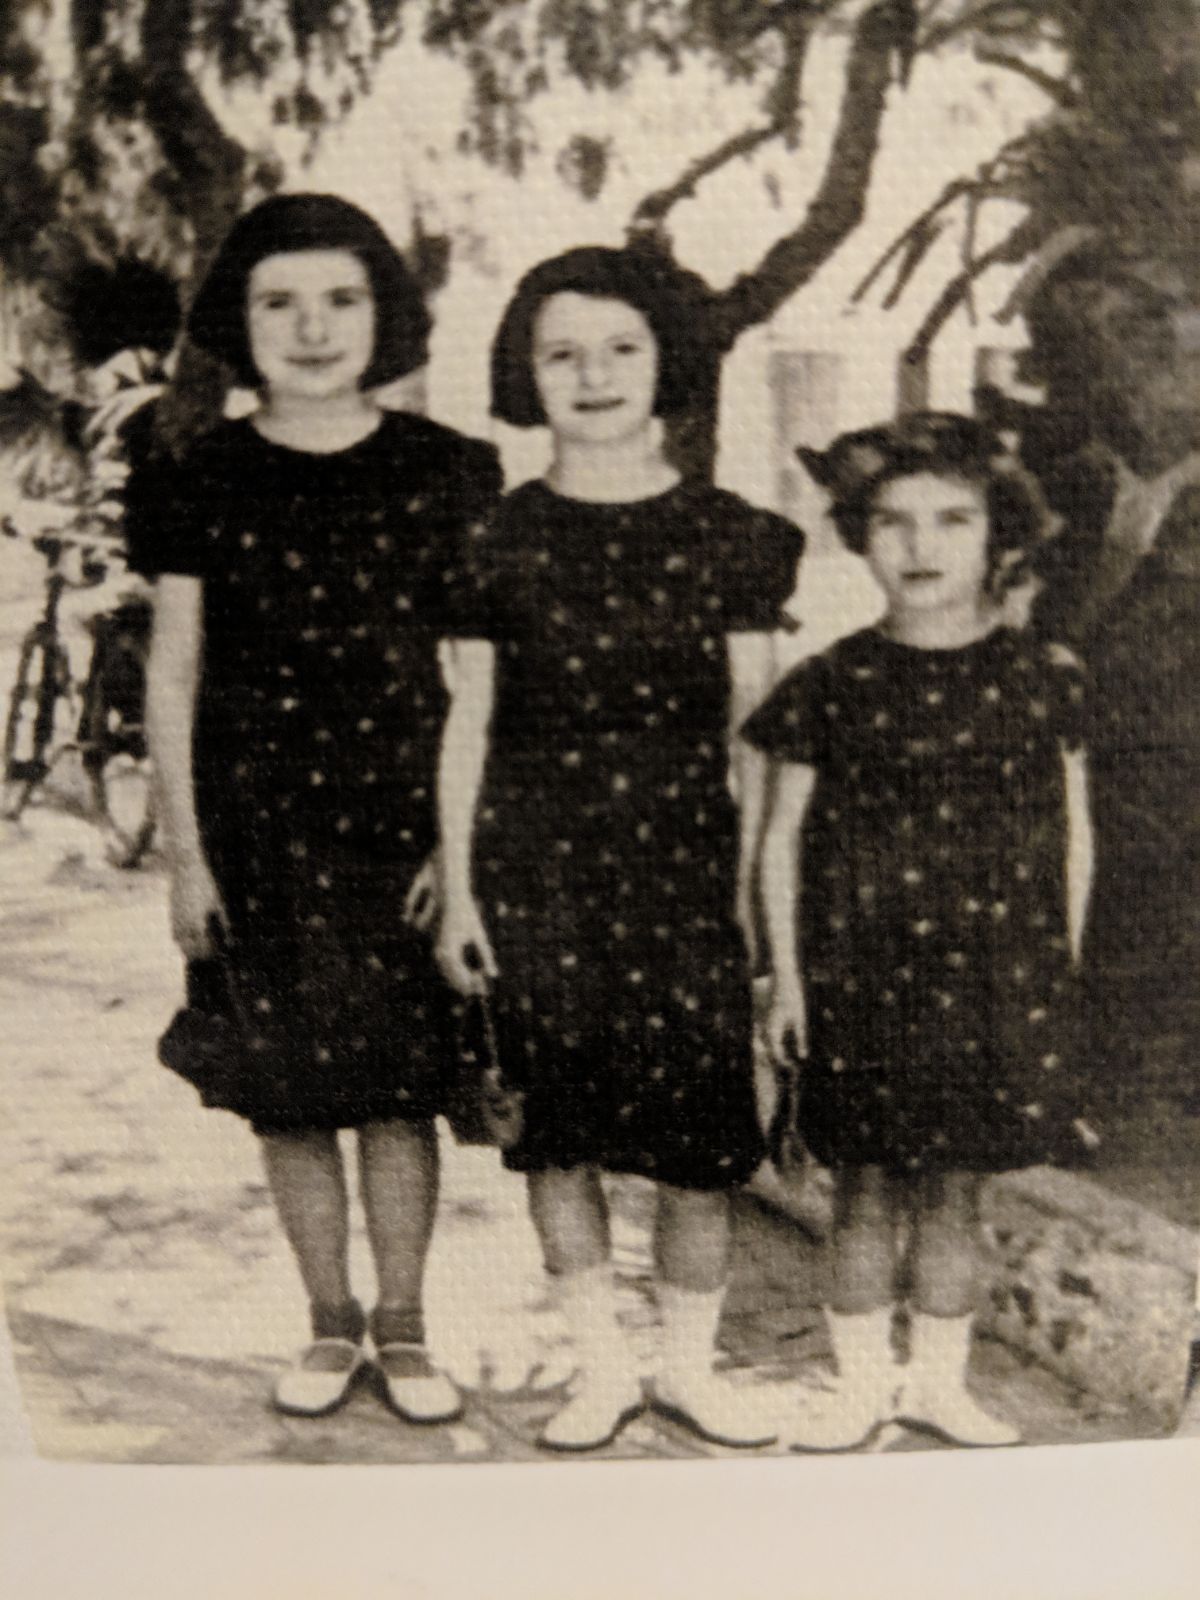 ילדות קטנות נשלחות לבדן לפלשתינה, ארץ ישראל. משמאל: חנה (אמא של סימה) לאה ומאשה